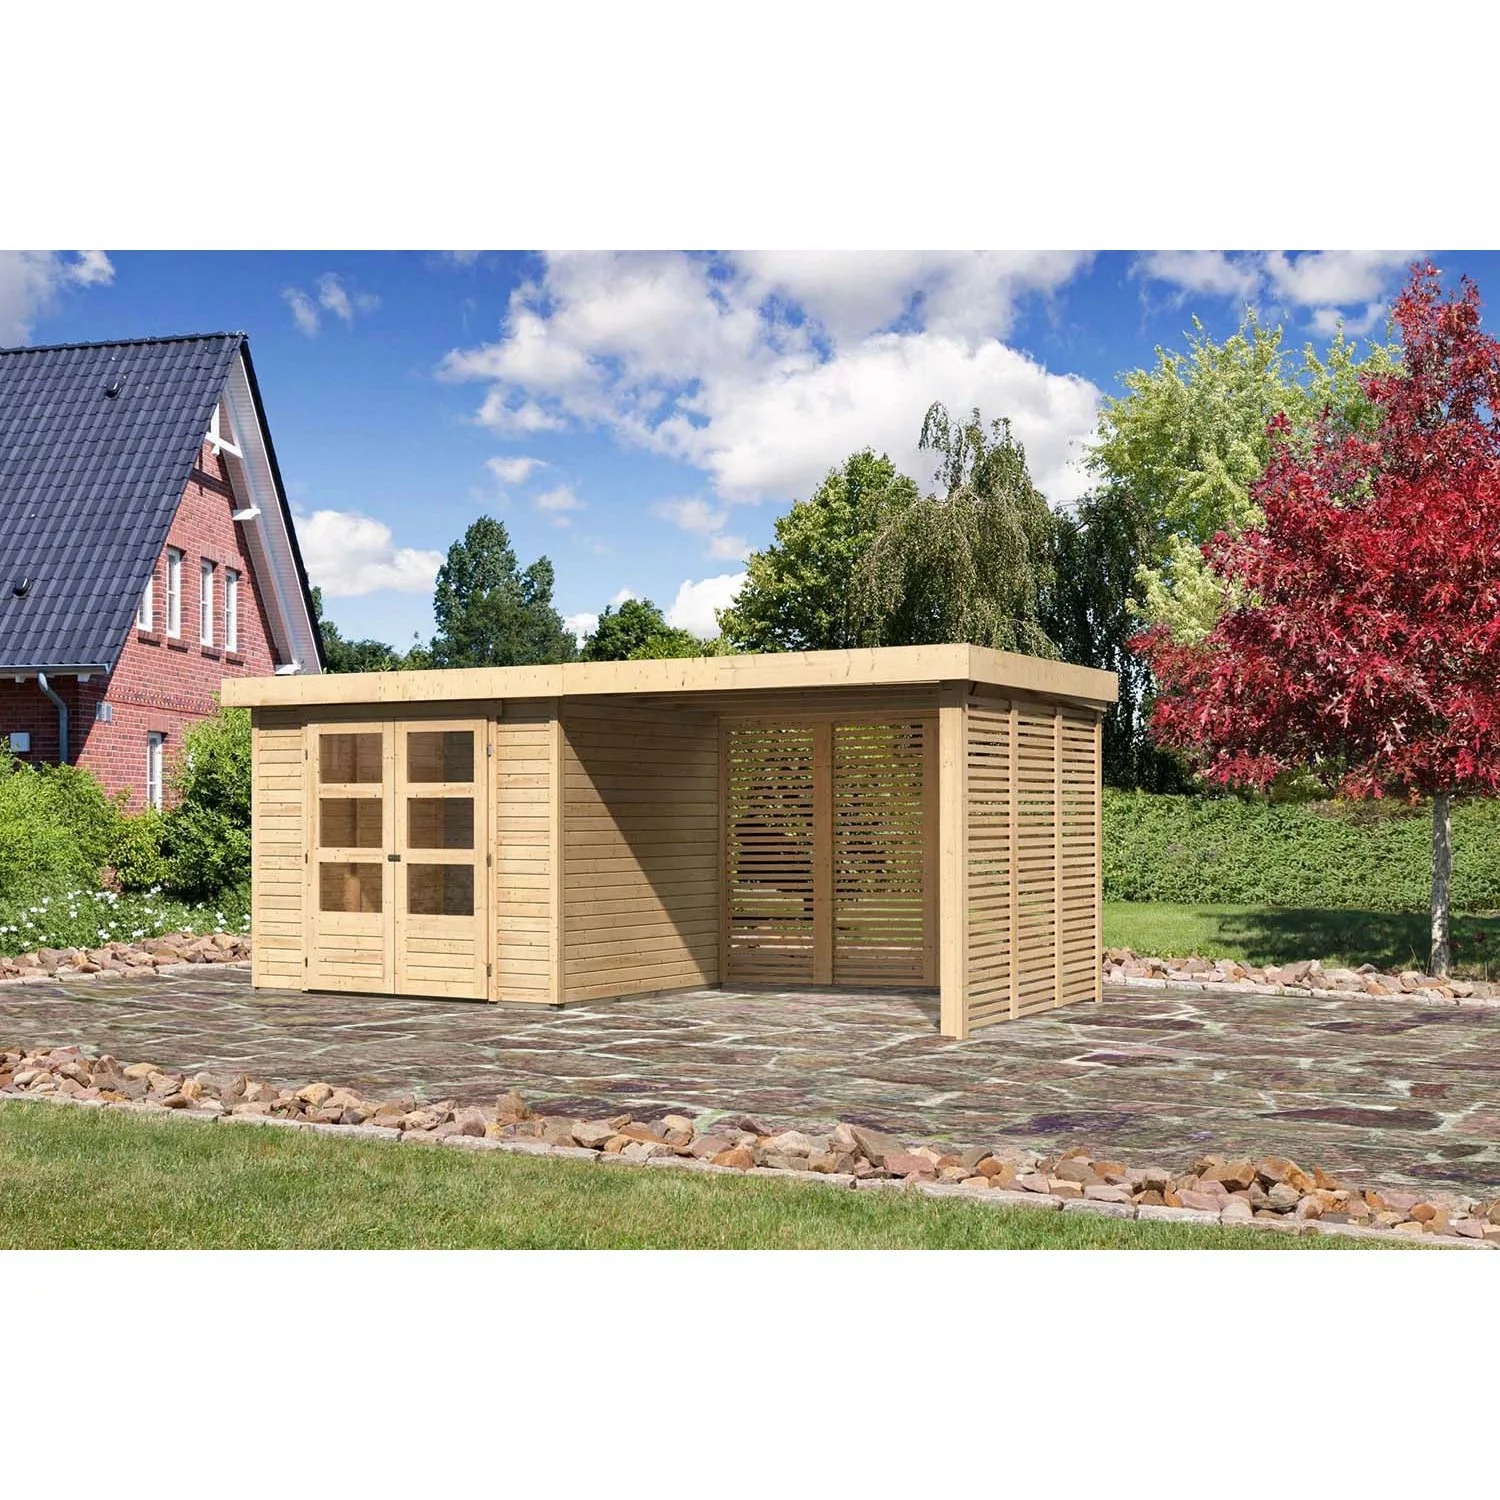 Karibu Holz-Gartenhaus Boras Natur Flachdach Unbehandelt 238 cm x 213 cm günstig online kaufen